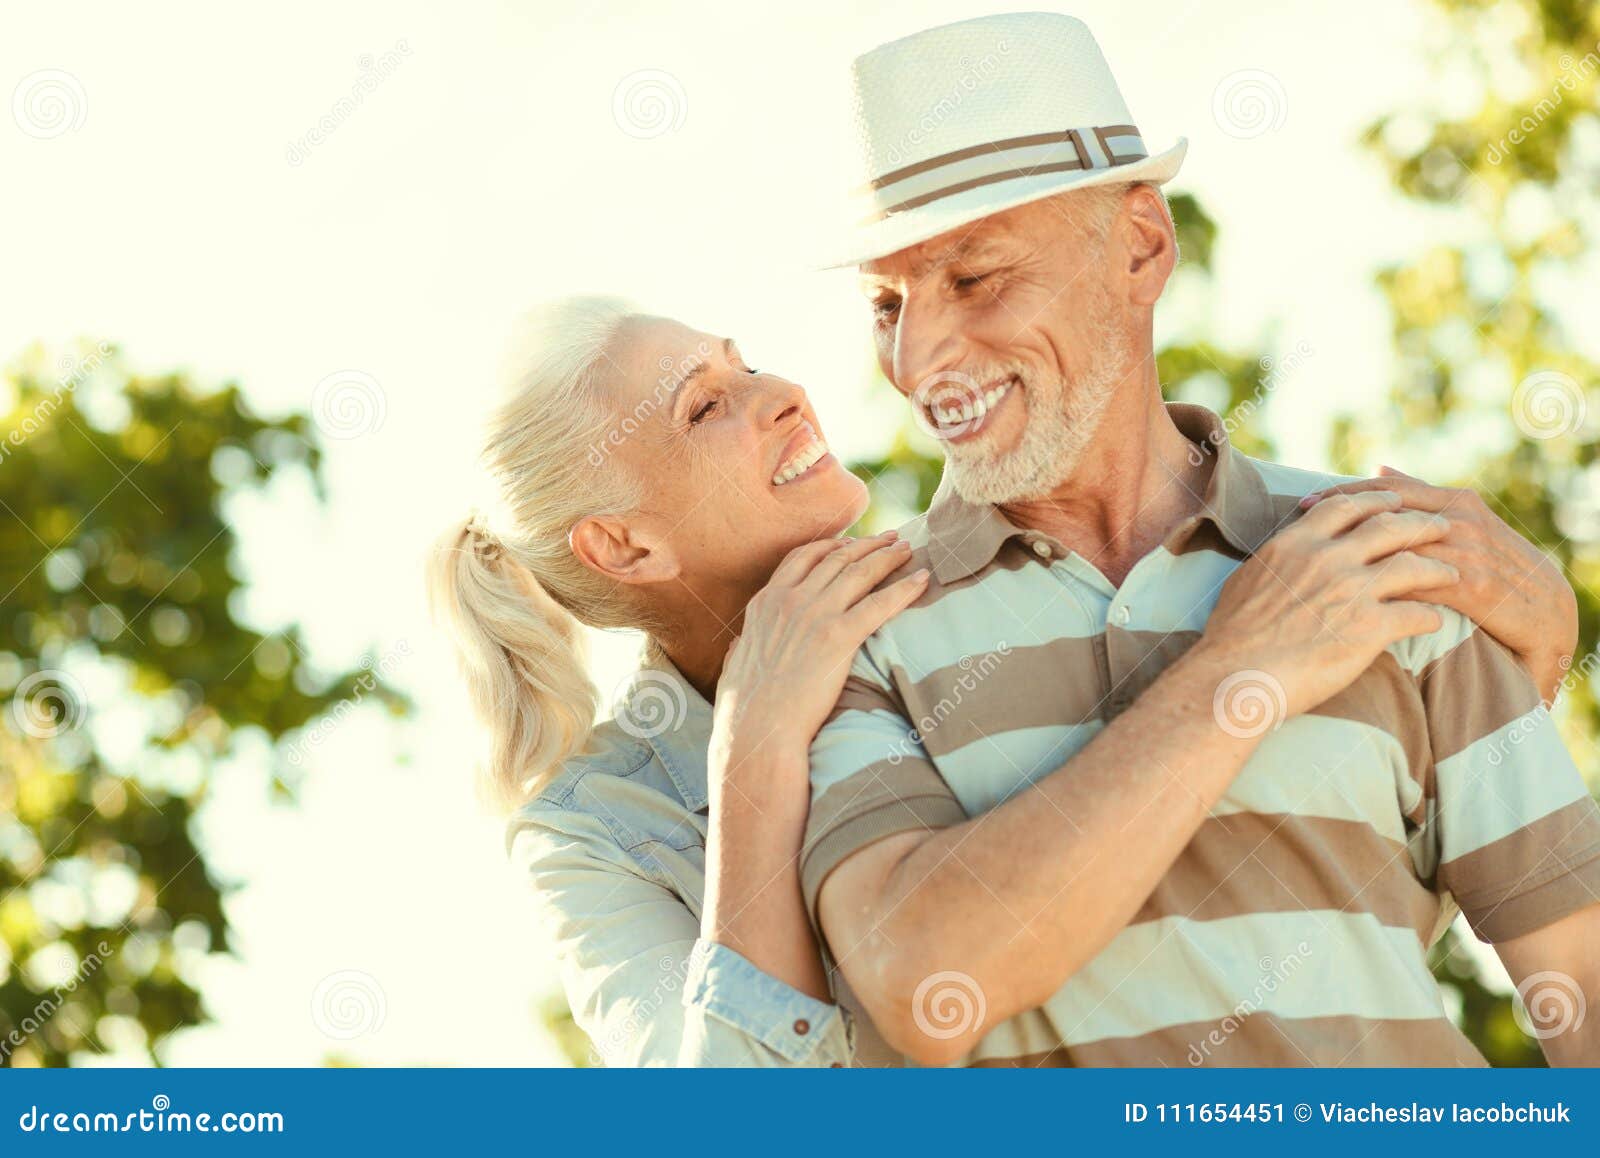 Joyful Nice Woman Standing Behind Her Husband Stock Image Image Of